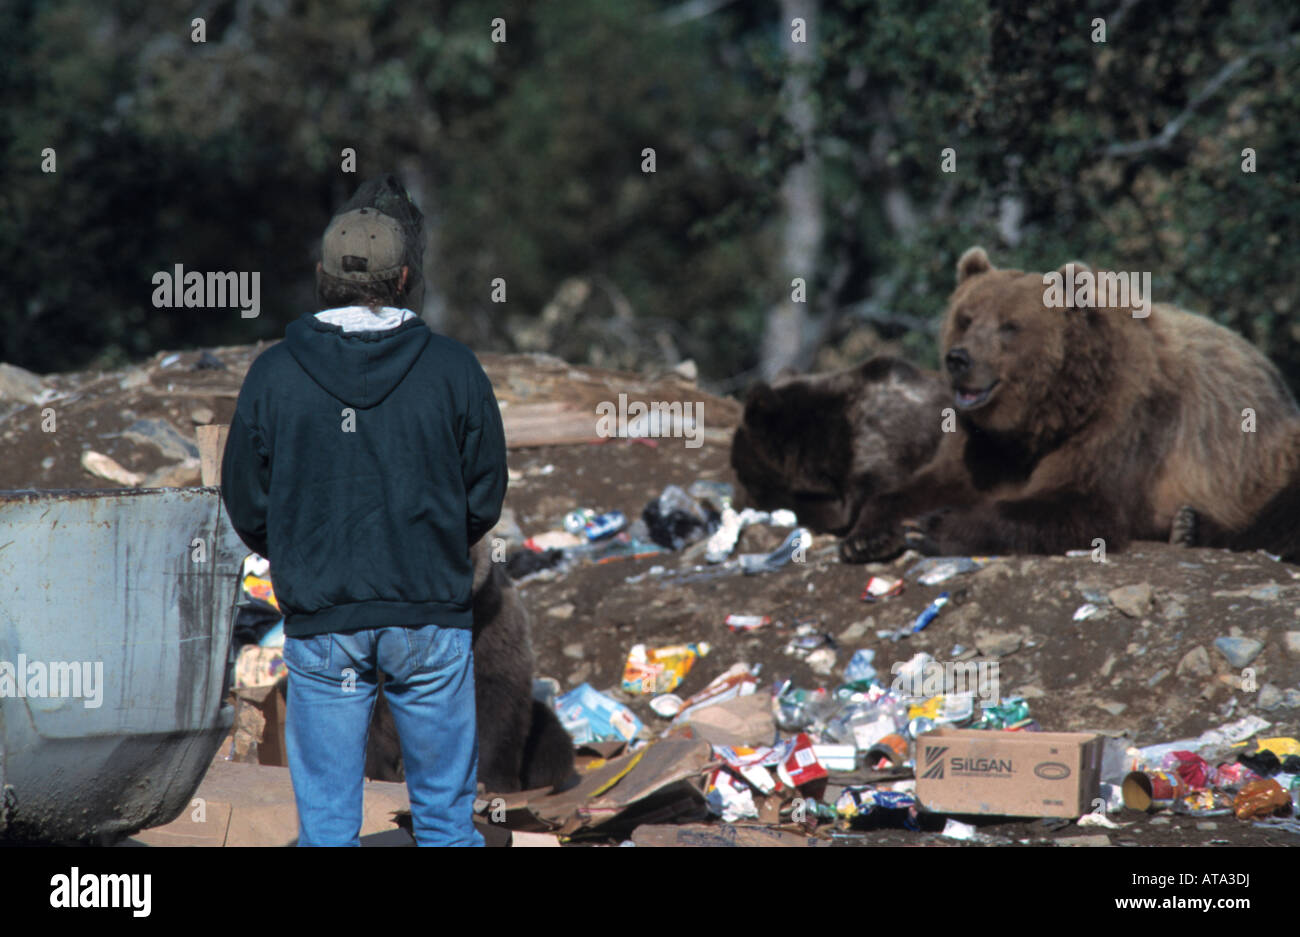 Kodiak bears (Ursus arctos middendorffi) at city dump, Kodiak Alaska Stock Photo